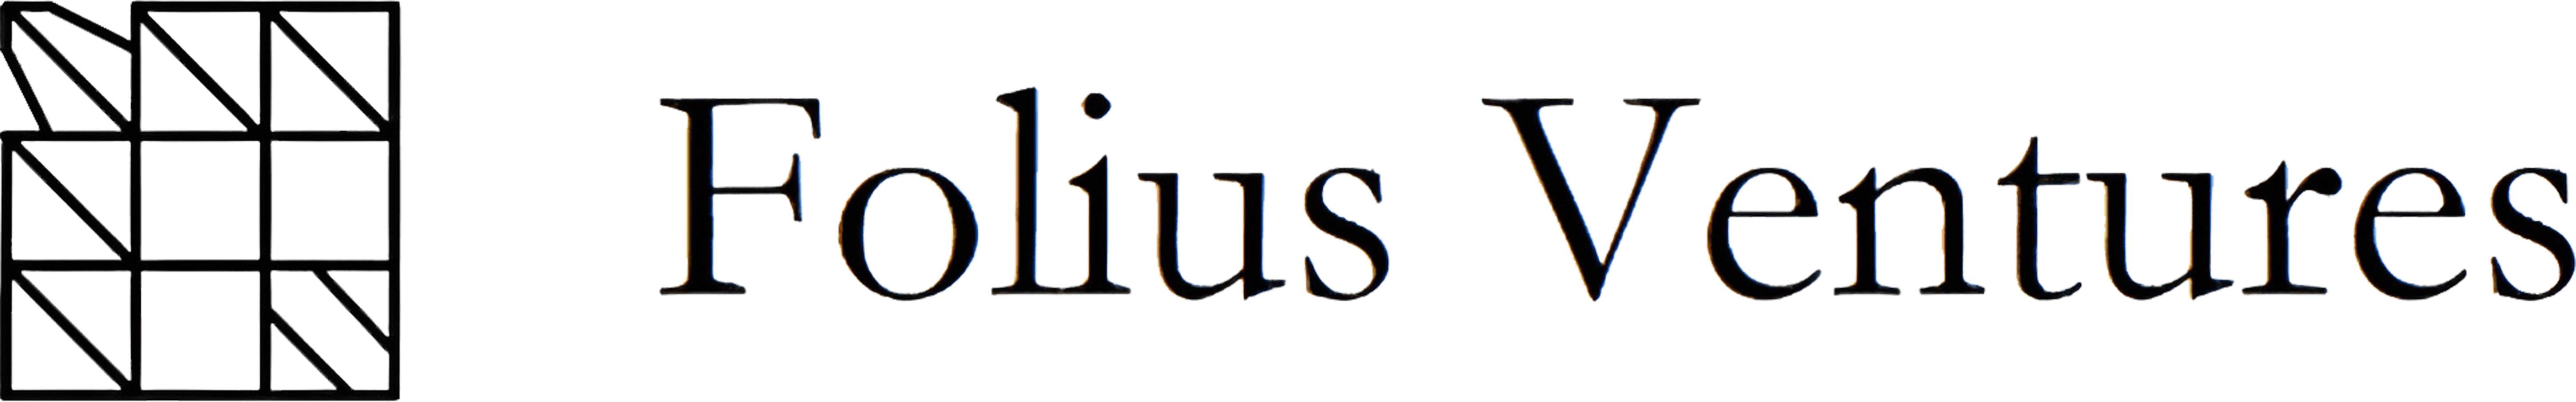 Folius Ventures | Lead investor